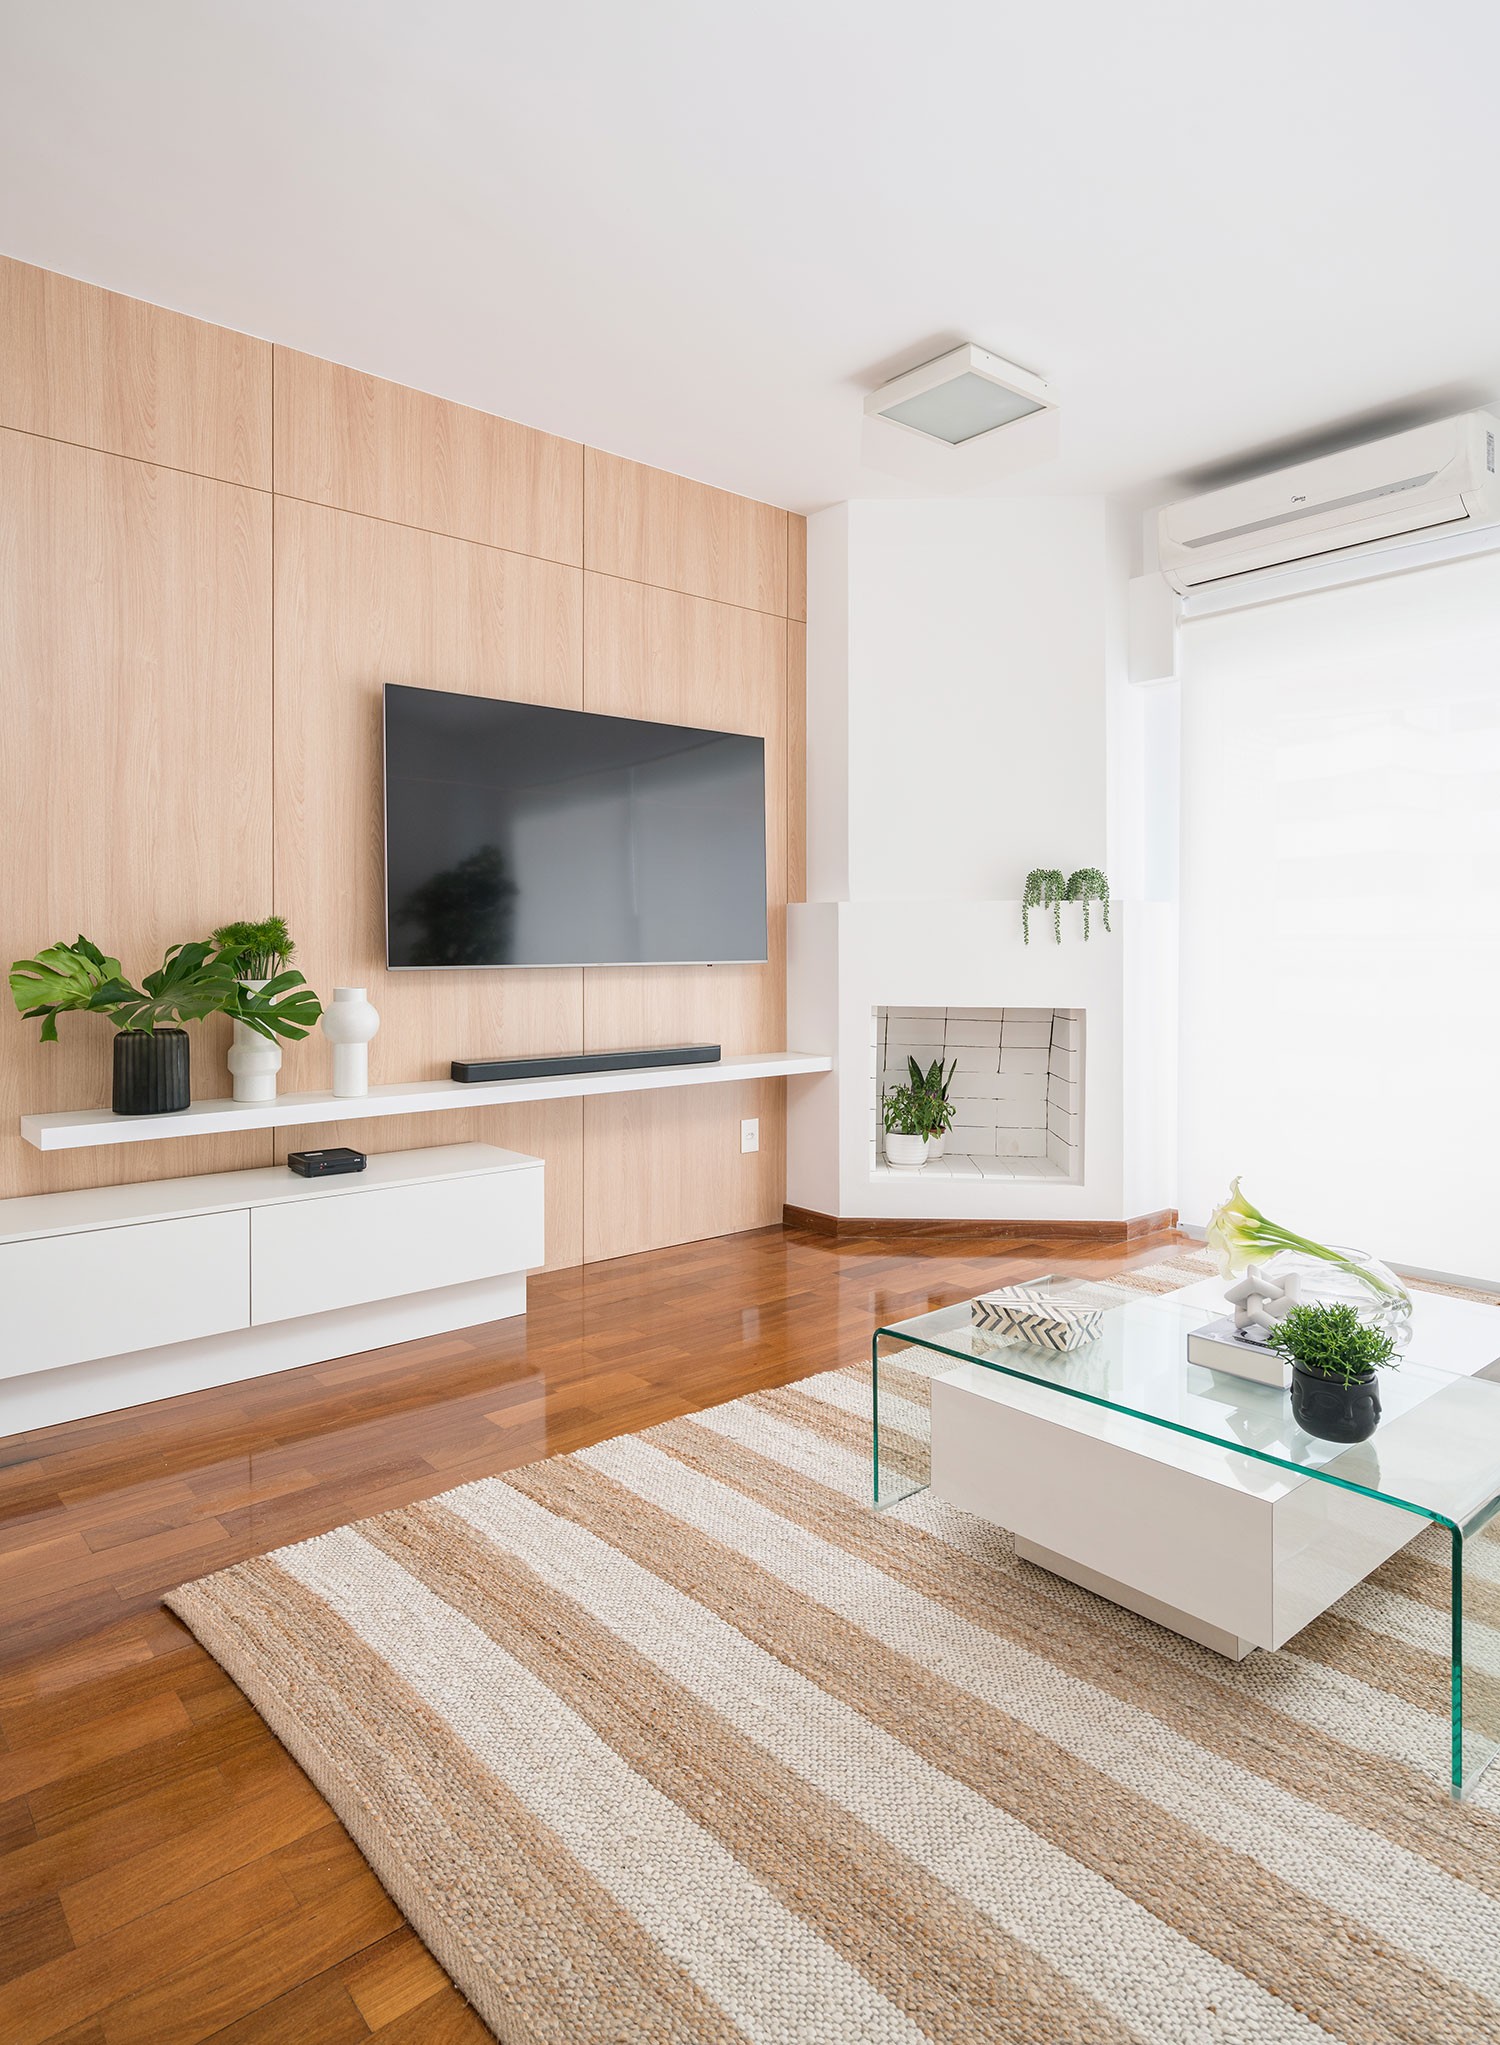 Décor do dia: sala de estar com estilo neutro e paleta de cores sóbrias (Foto: Kadu Lopes)